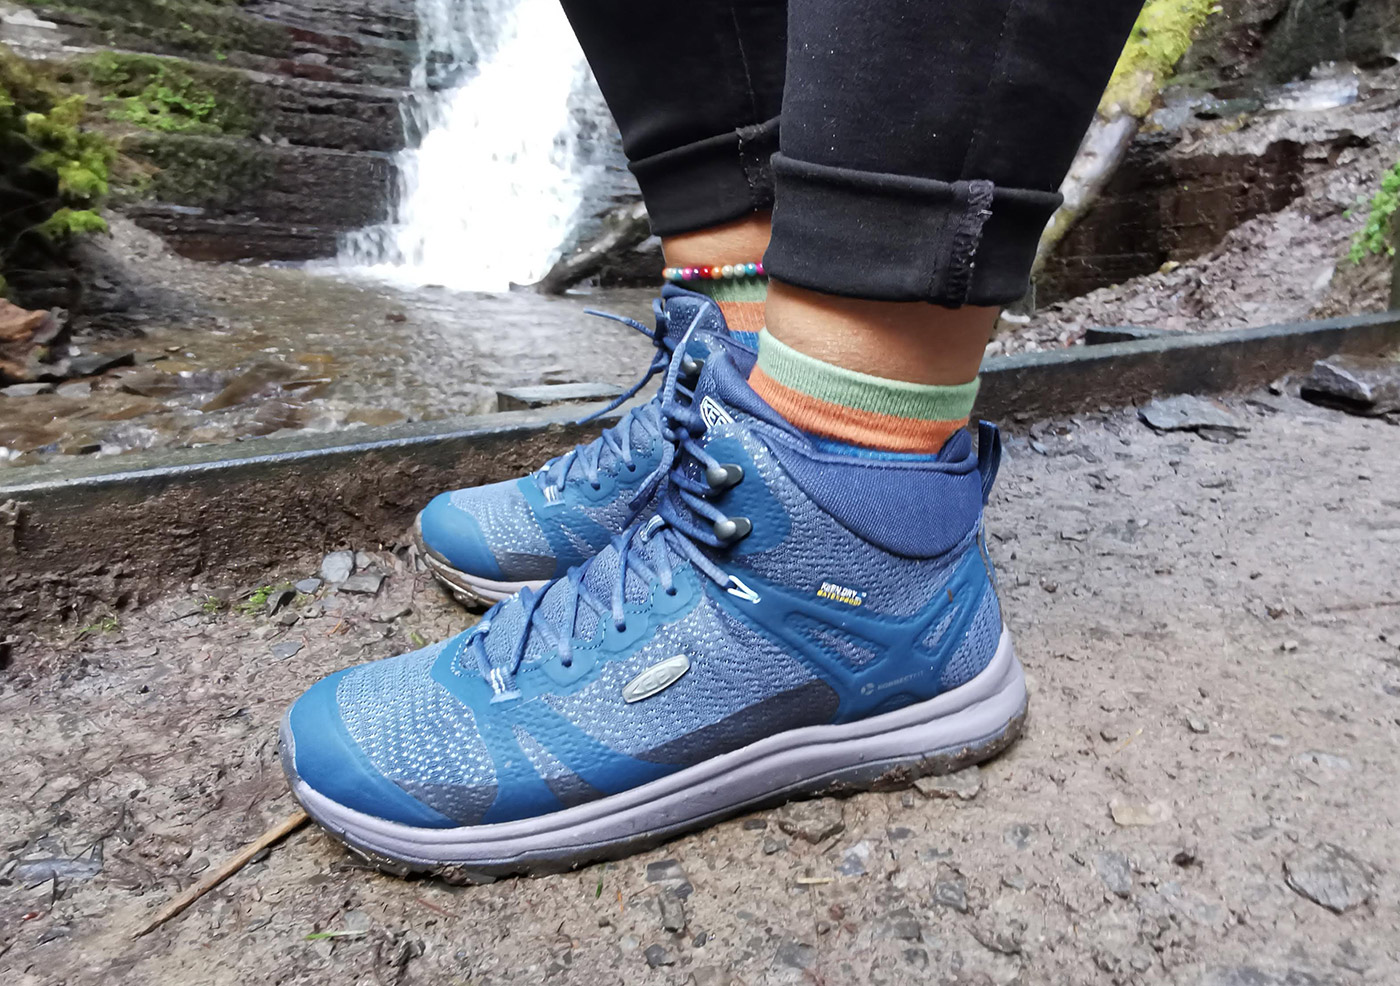 Keen Jungen Terradora Wasserdicht Wanderschuhe Trekking Outdoor Schuhe Blau 